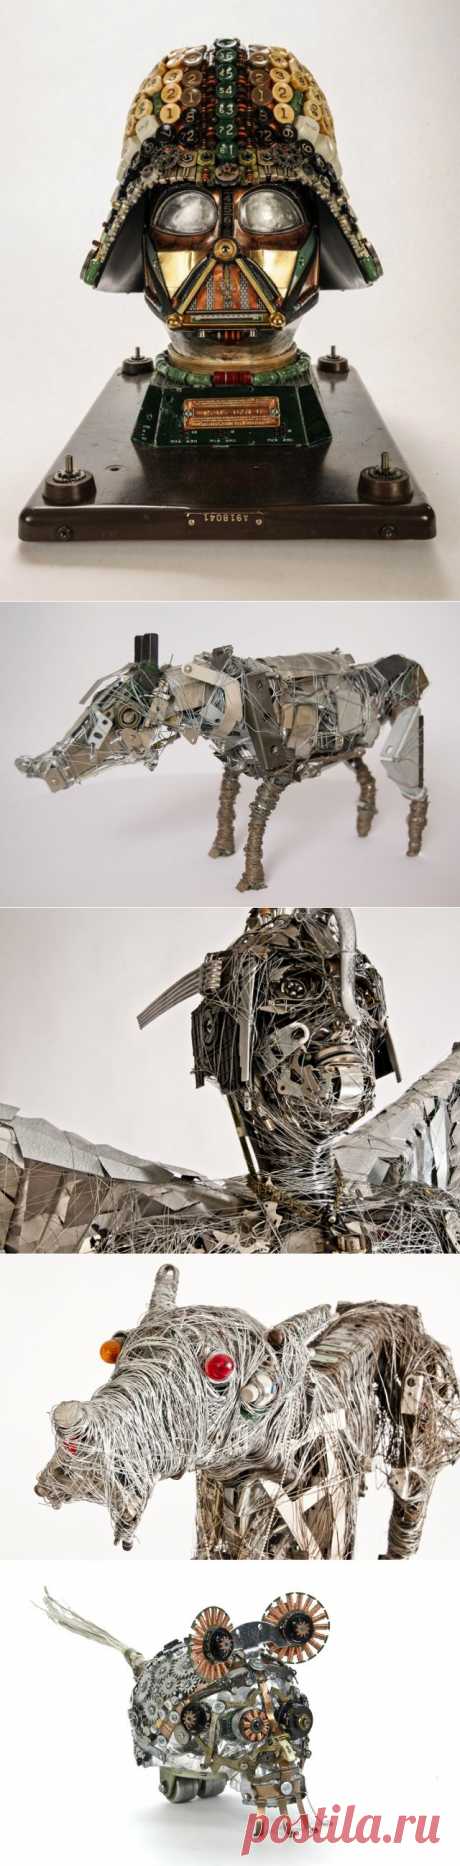 Невероятные механические скульптуры Габриэля Дишо | Хвастунишка